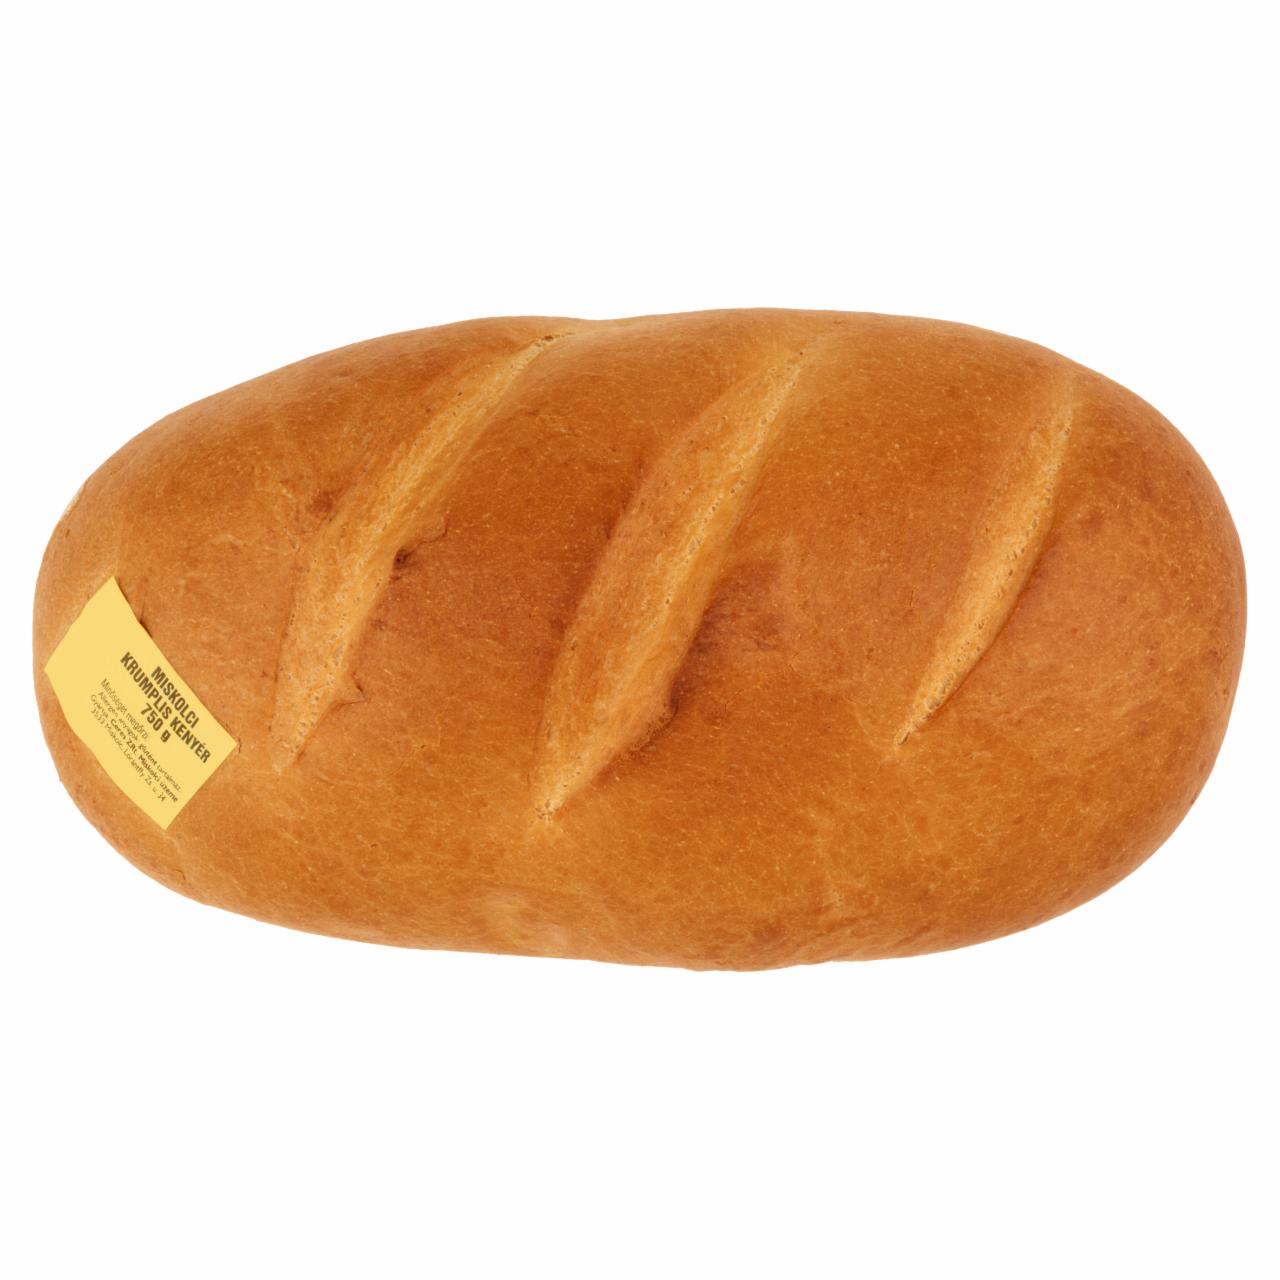 Képek - Miskolci krumplis kenyér 750 g